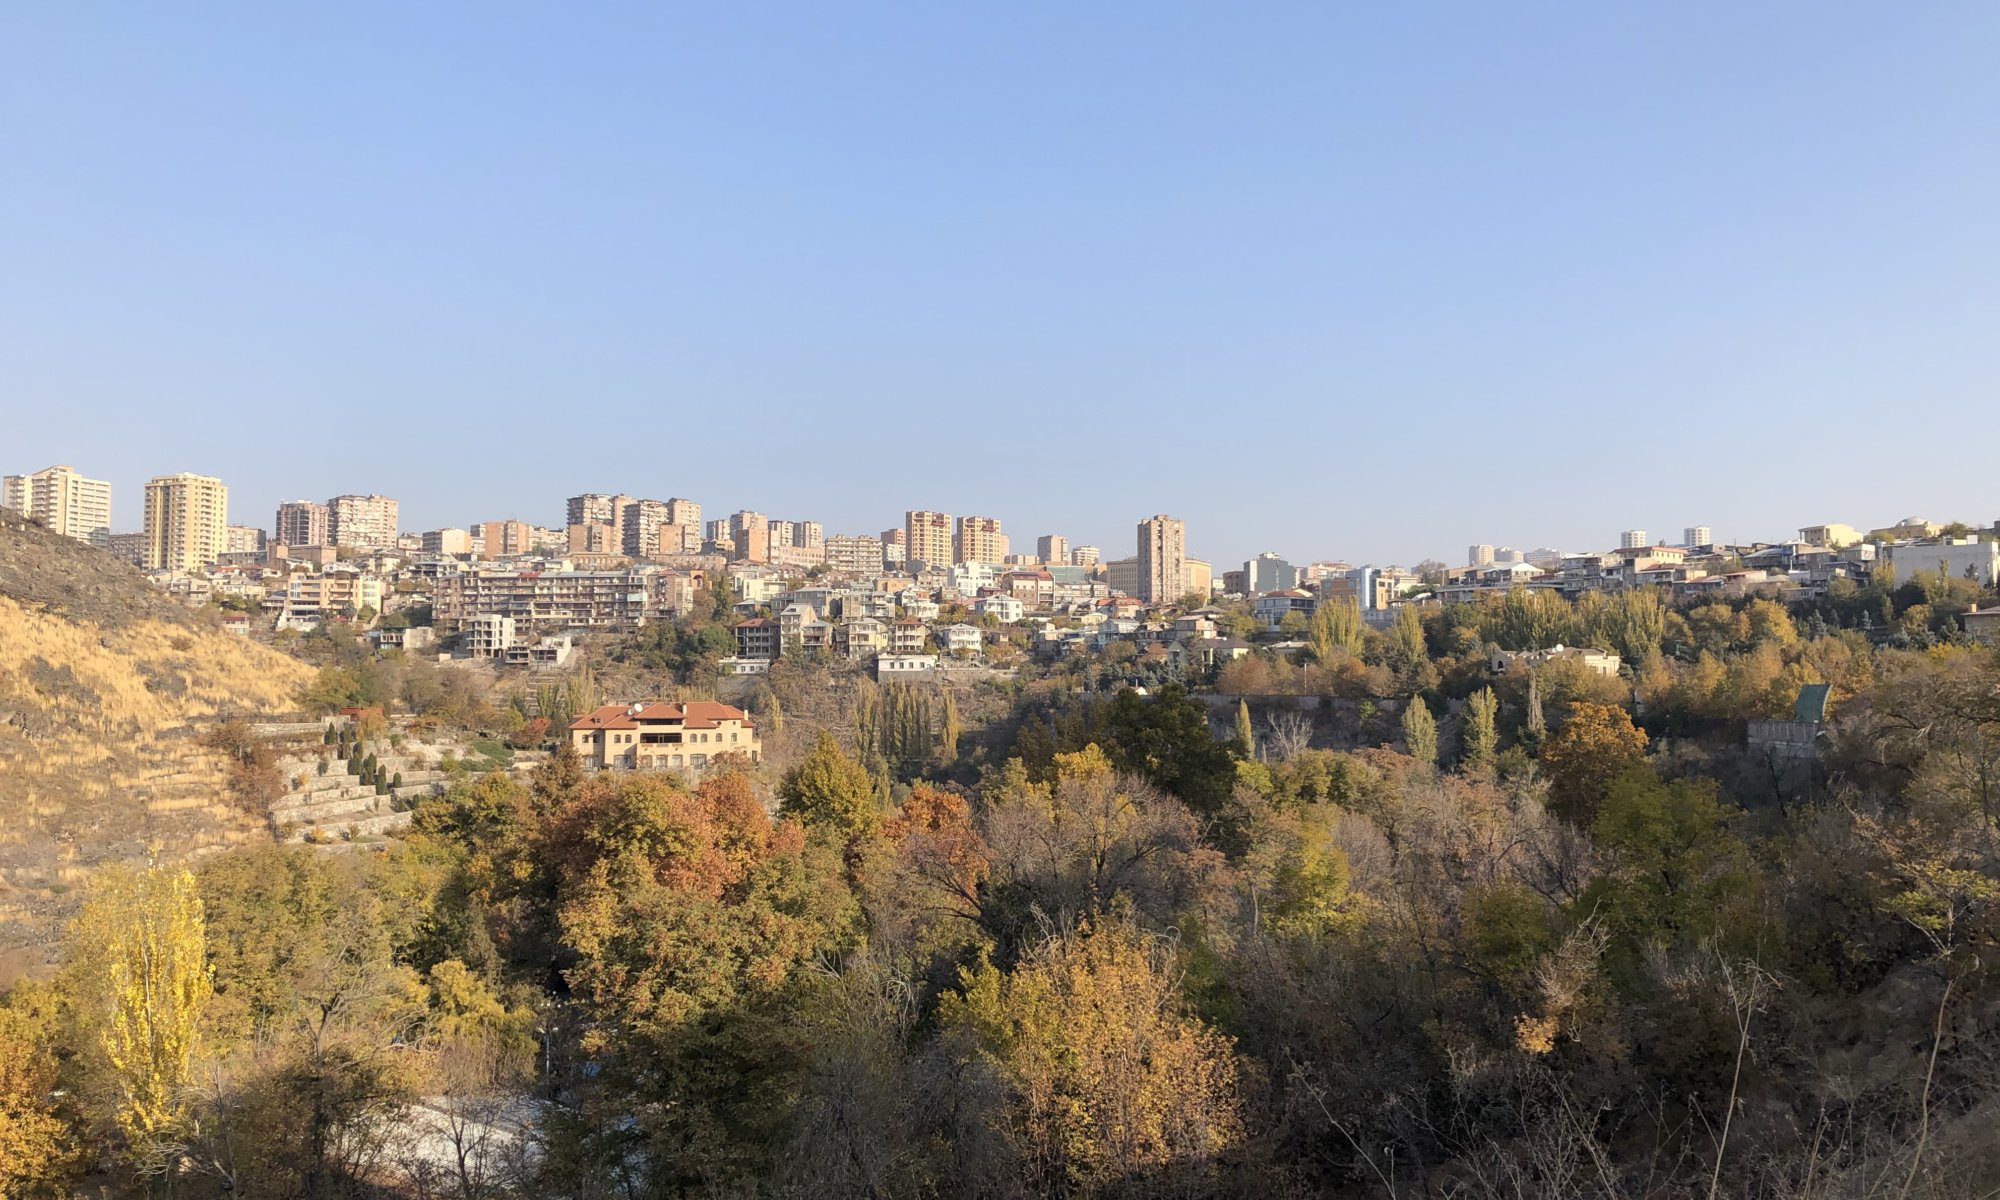 Hrasdan valley, Երևան